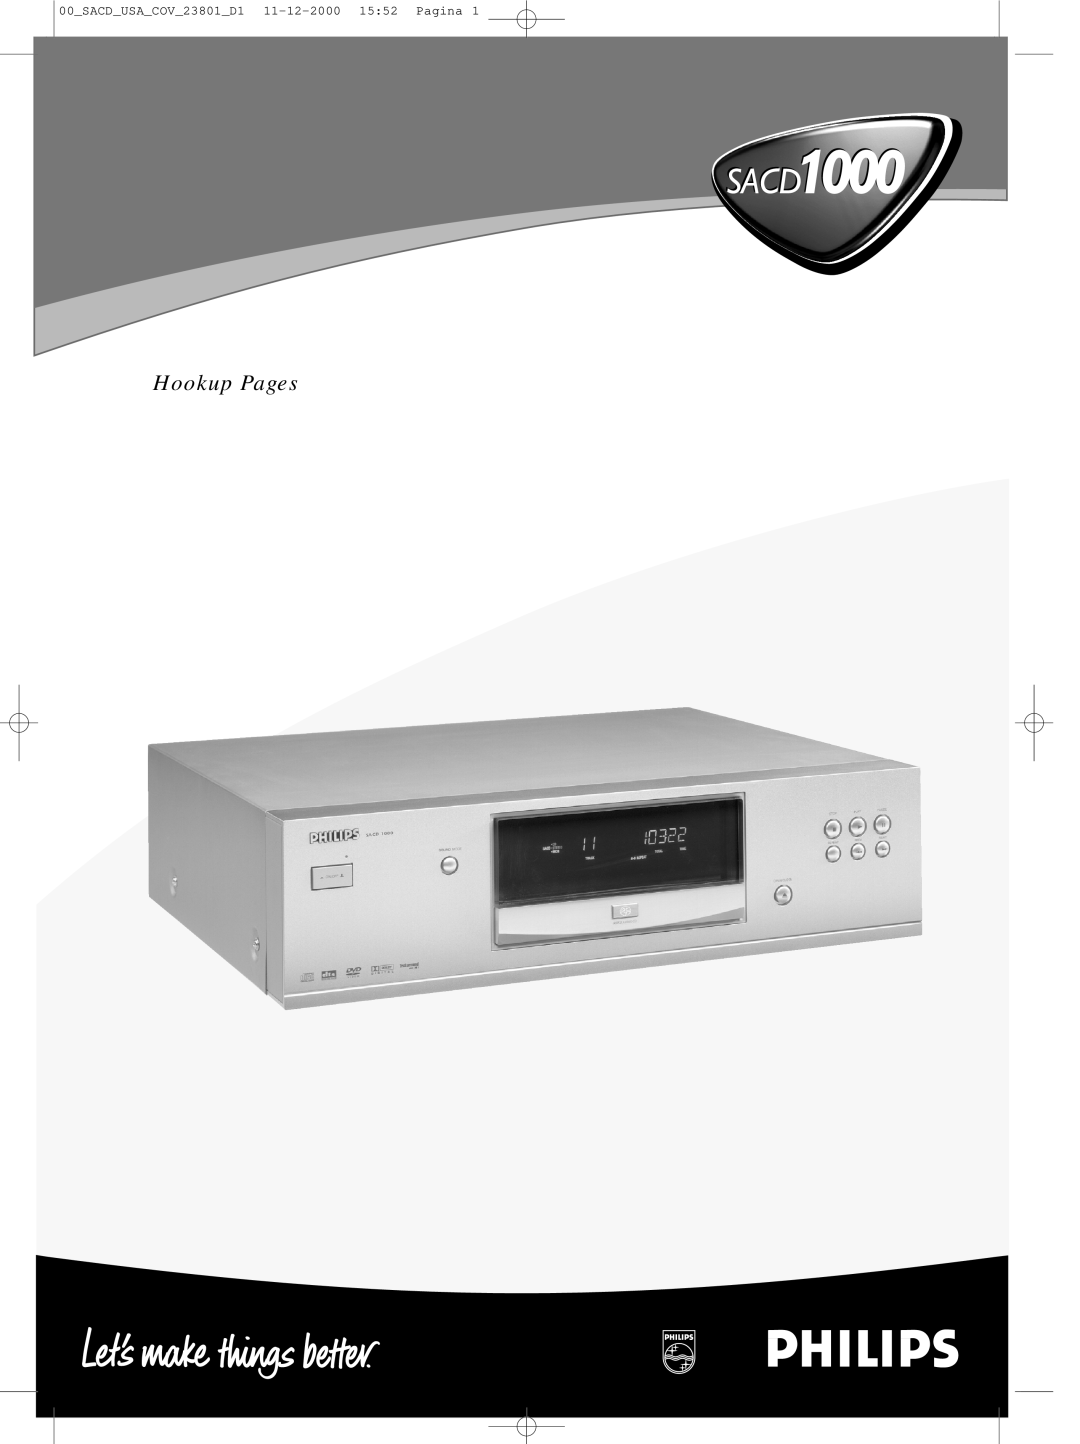 Philips SACD-1000 manual SACD USA COV 23801 D1 11-12-200015 52 Pagina 